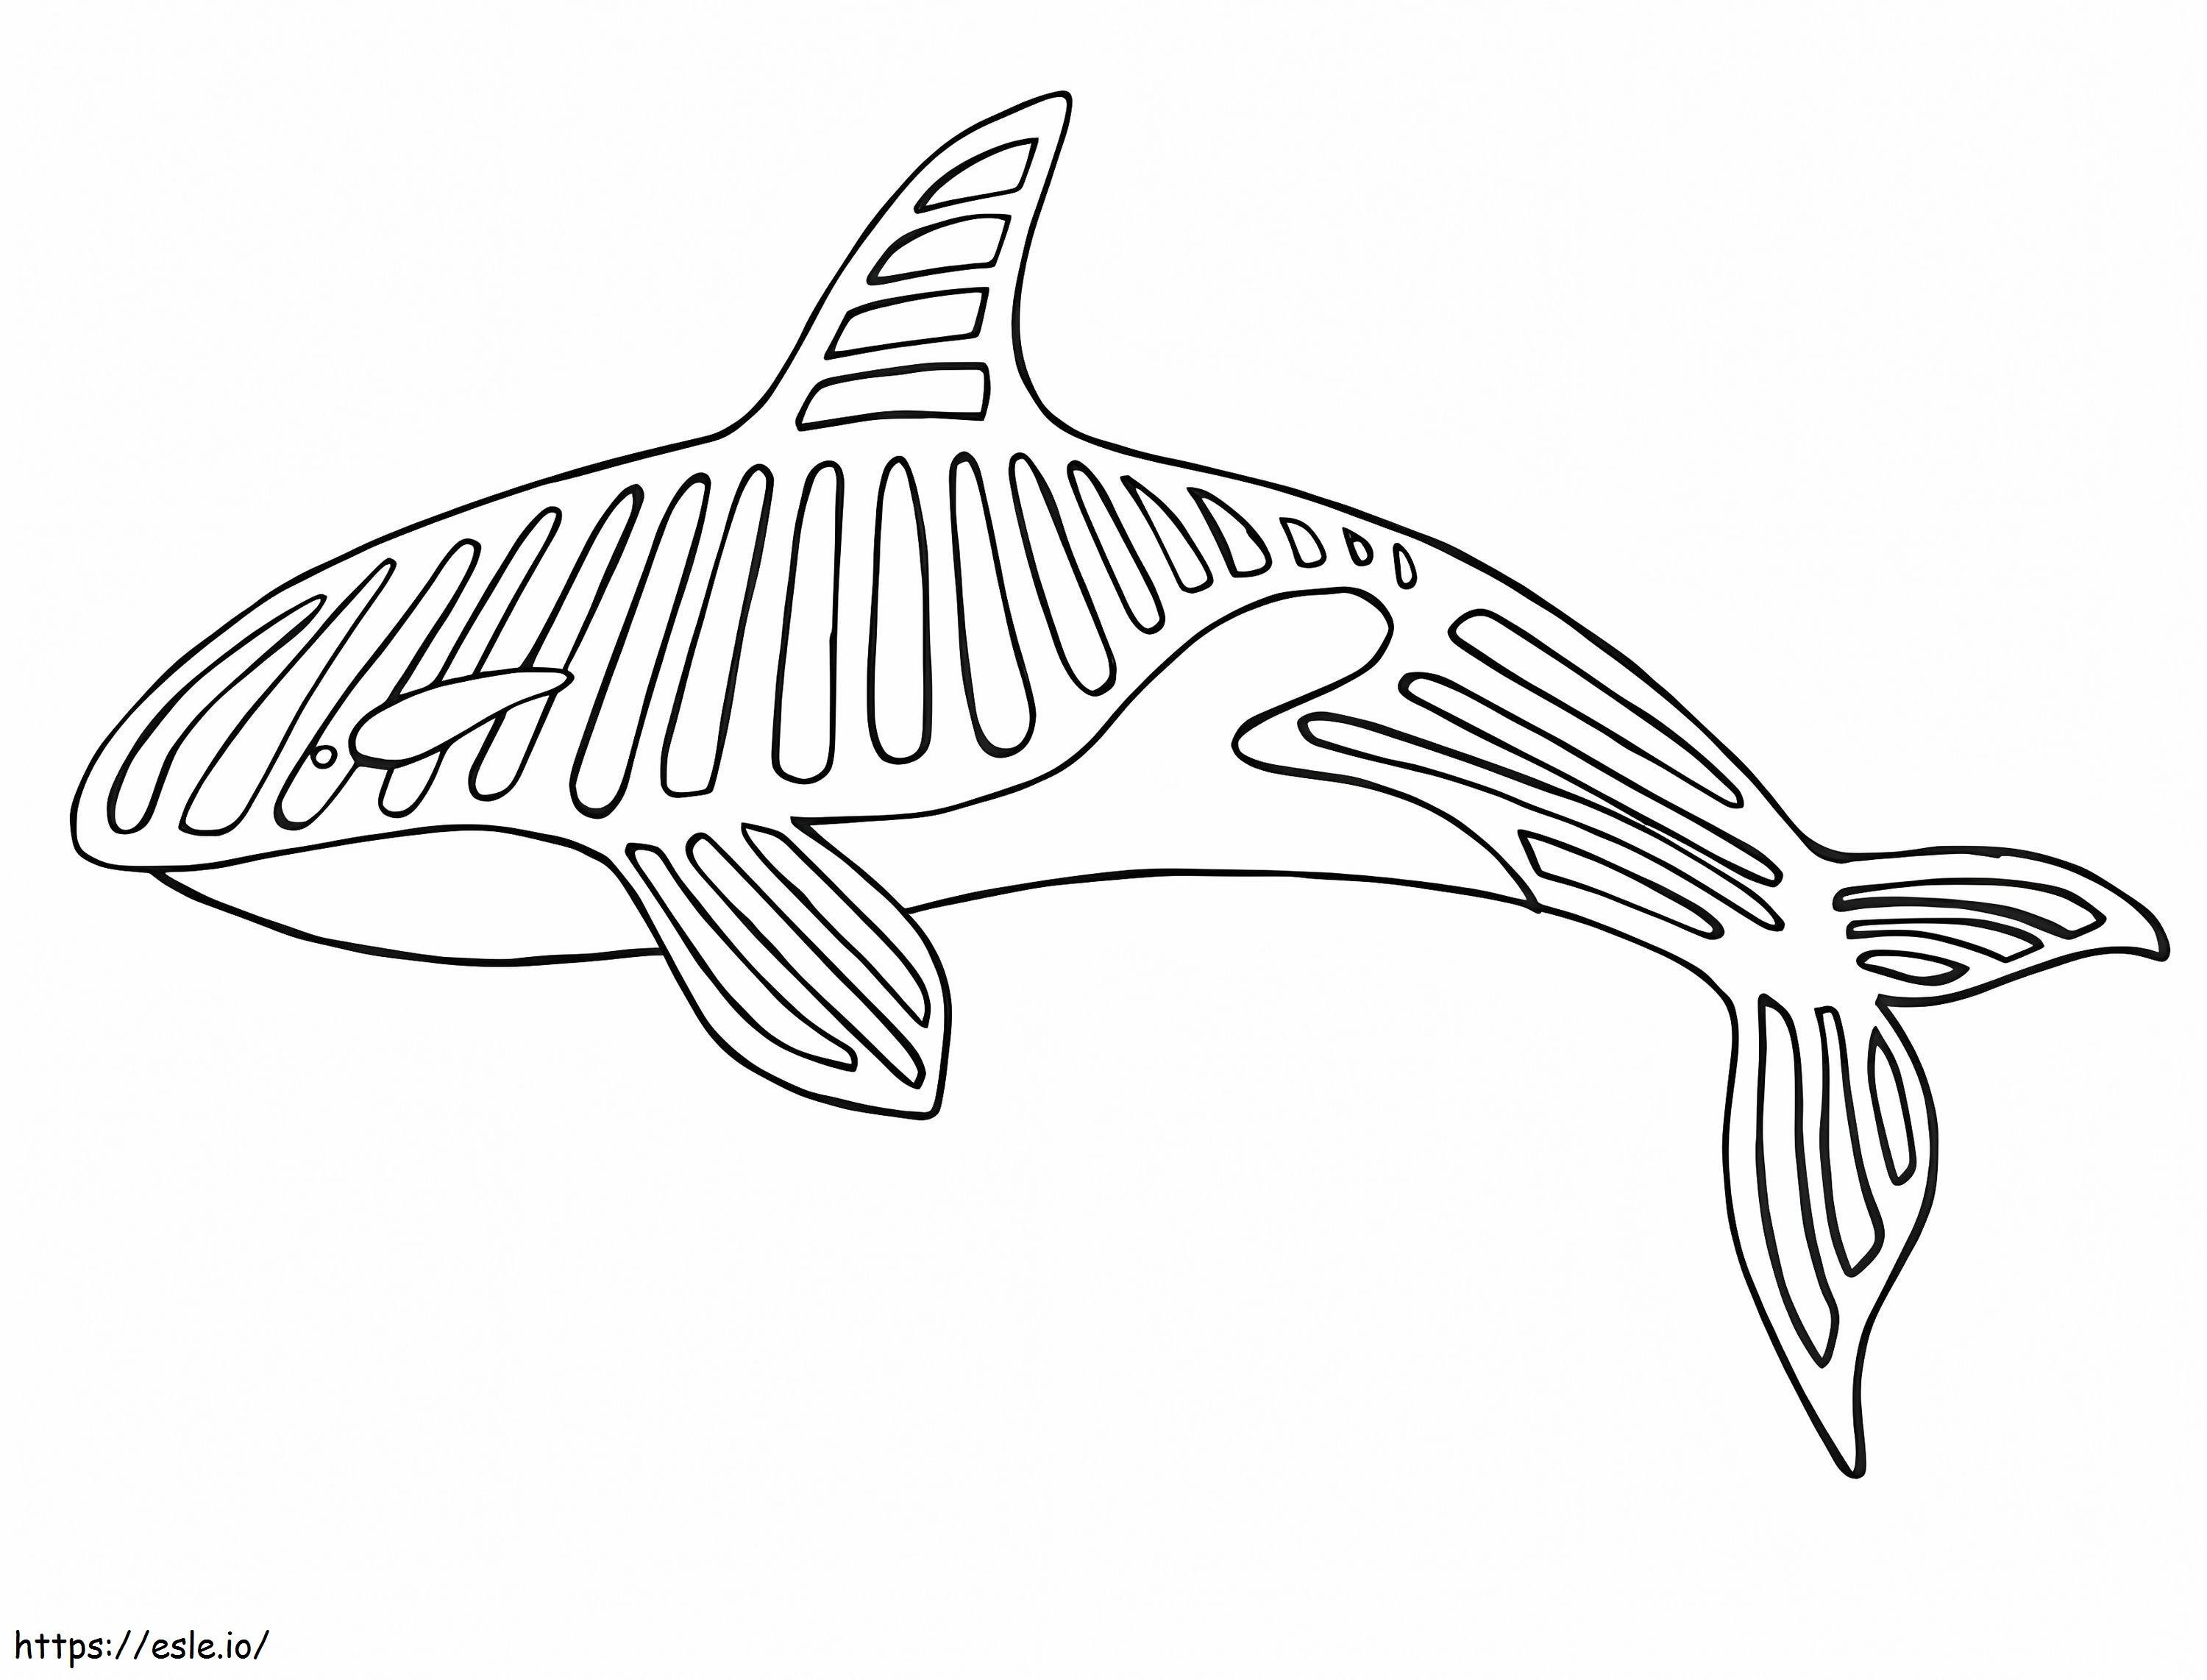 Whale Alebrijes coloring page